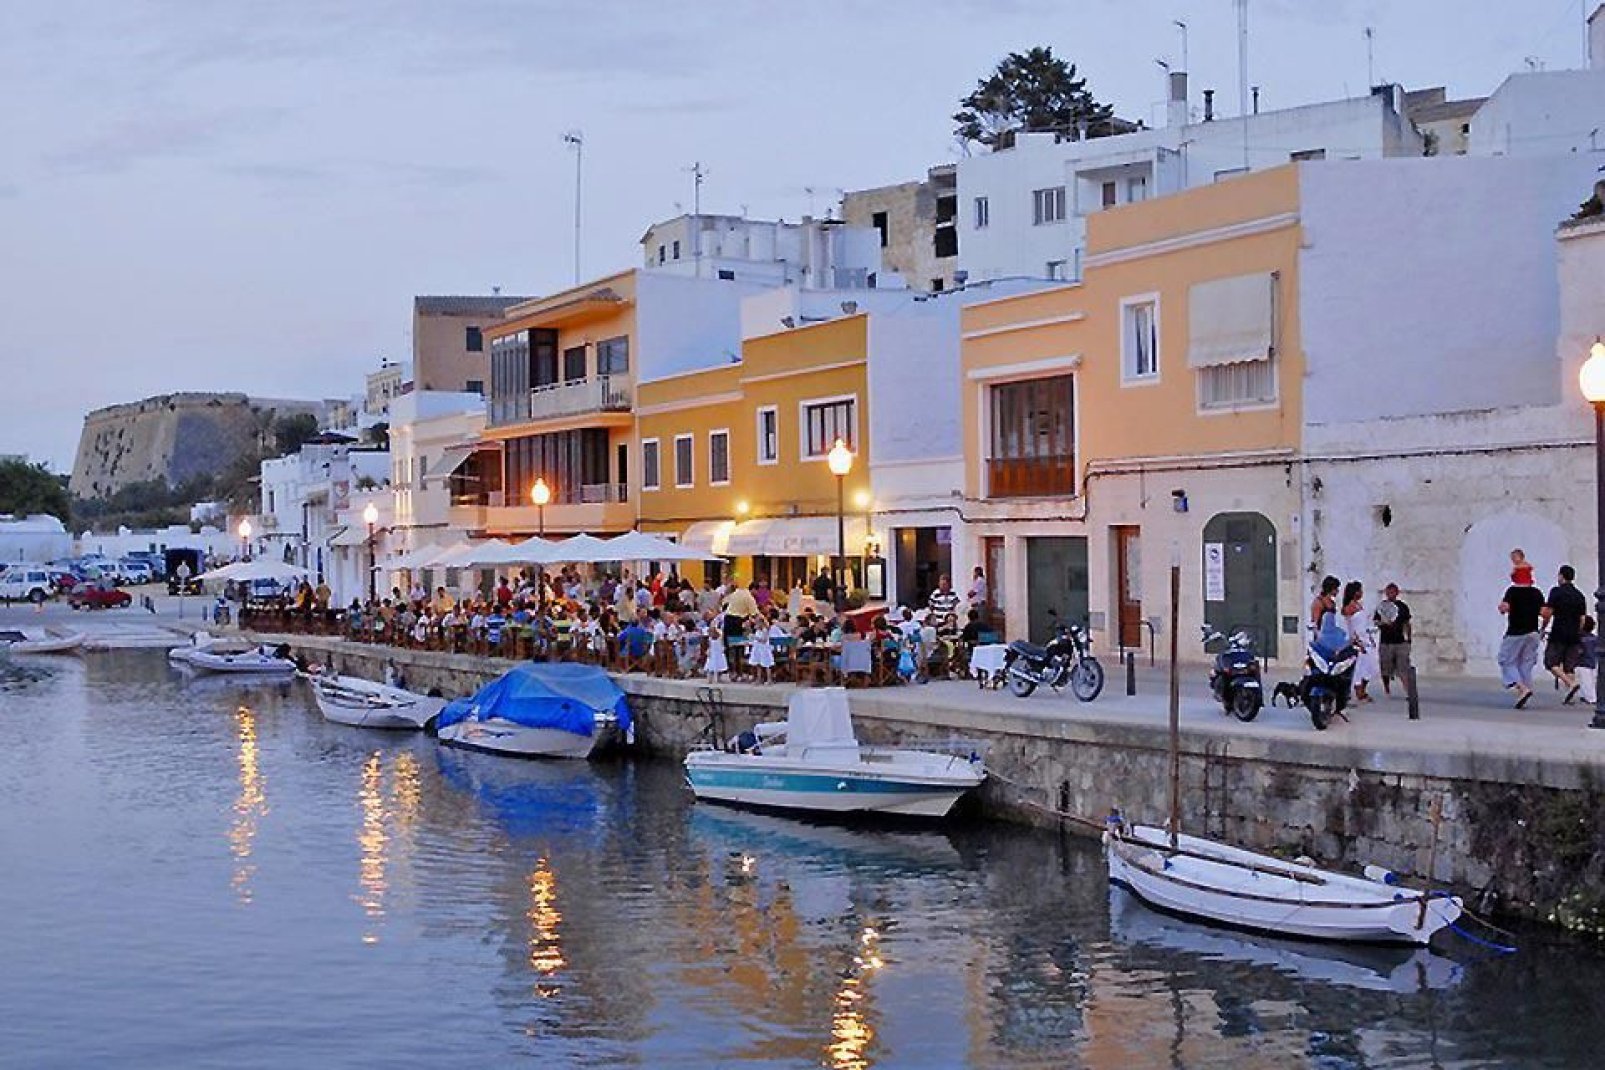 Viele kleine Cafes säumen den Ufergang im Hafen Ciutadellas.